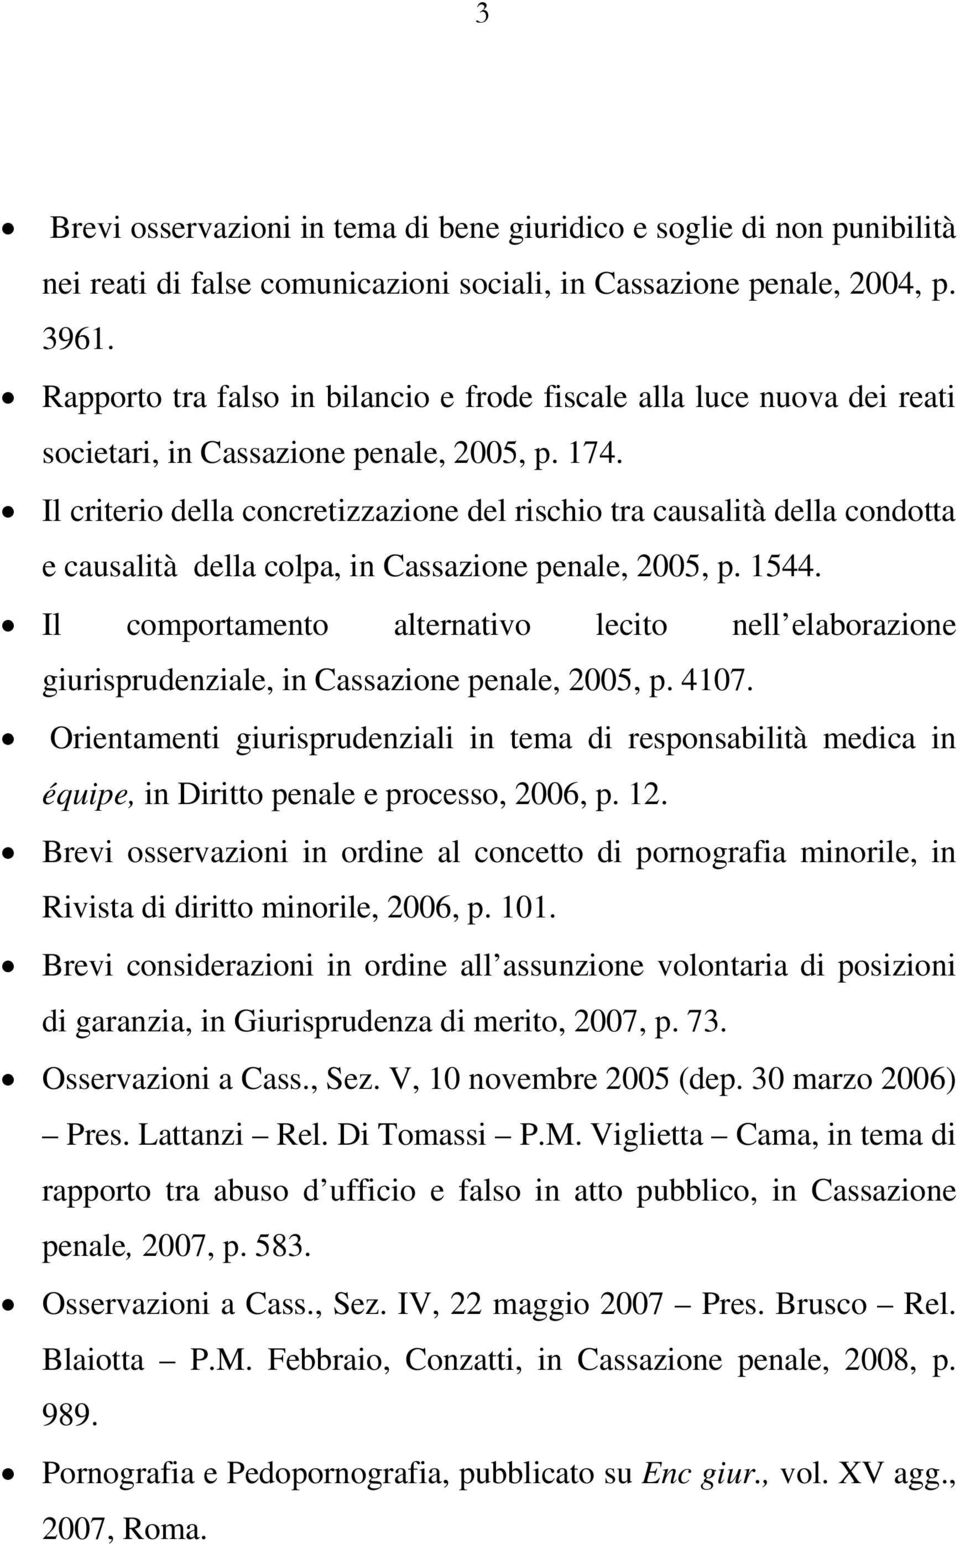 Il criterio della concretizzazione del rischio tra causalità della condotta e causalità della colpa, in Cassazione penale, 2005, p. 1544.